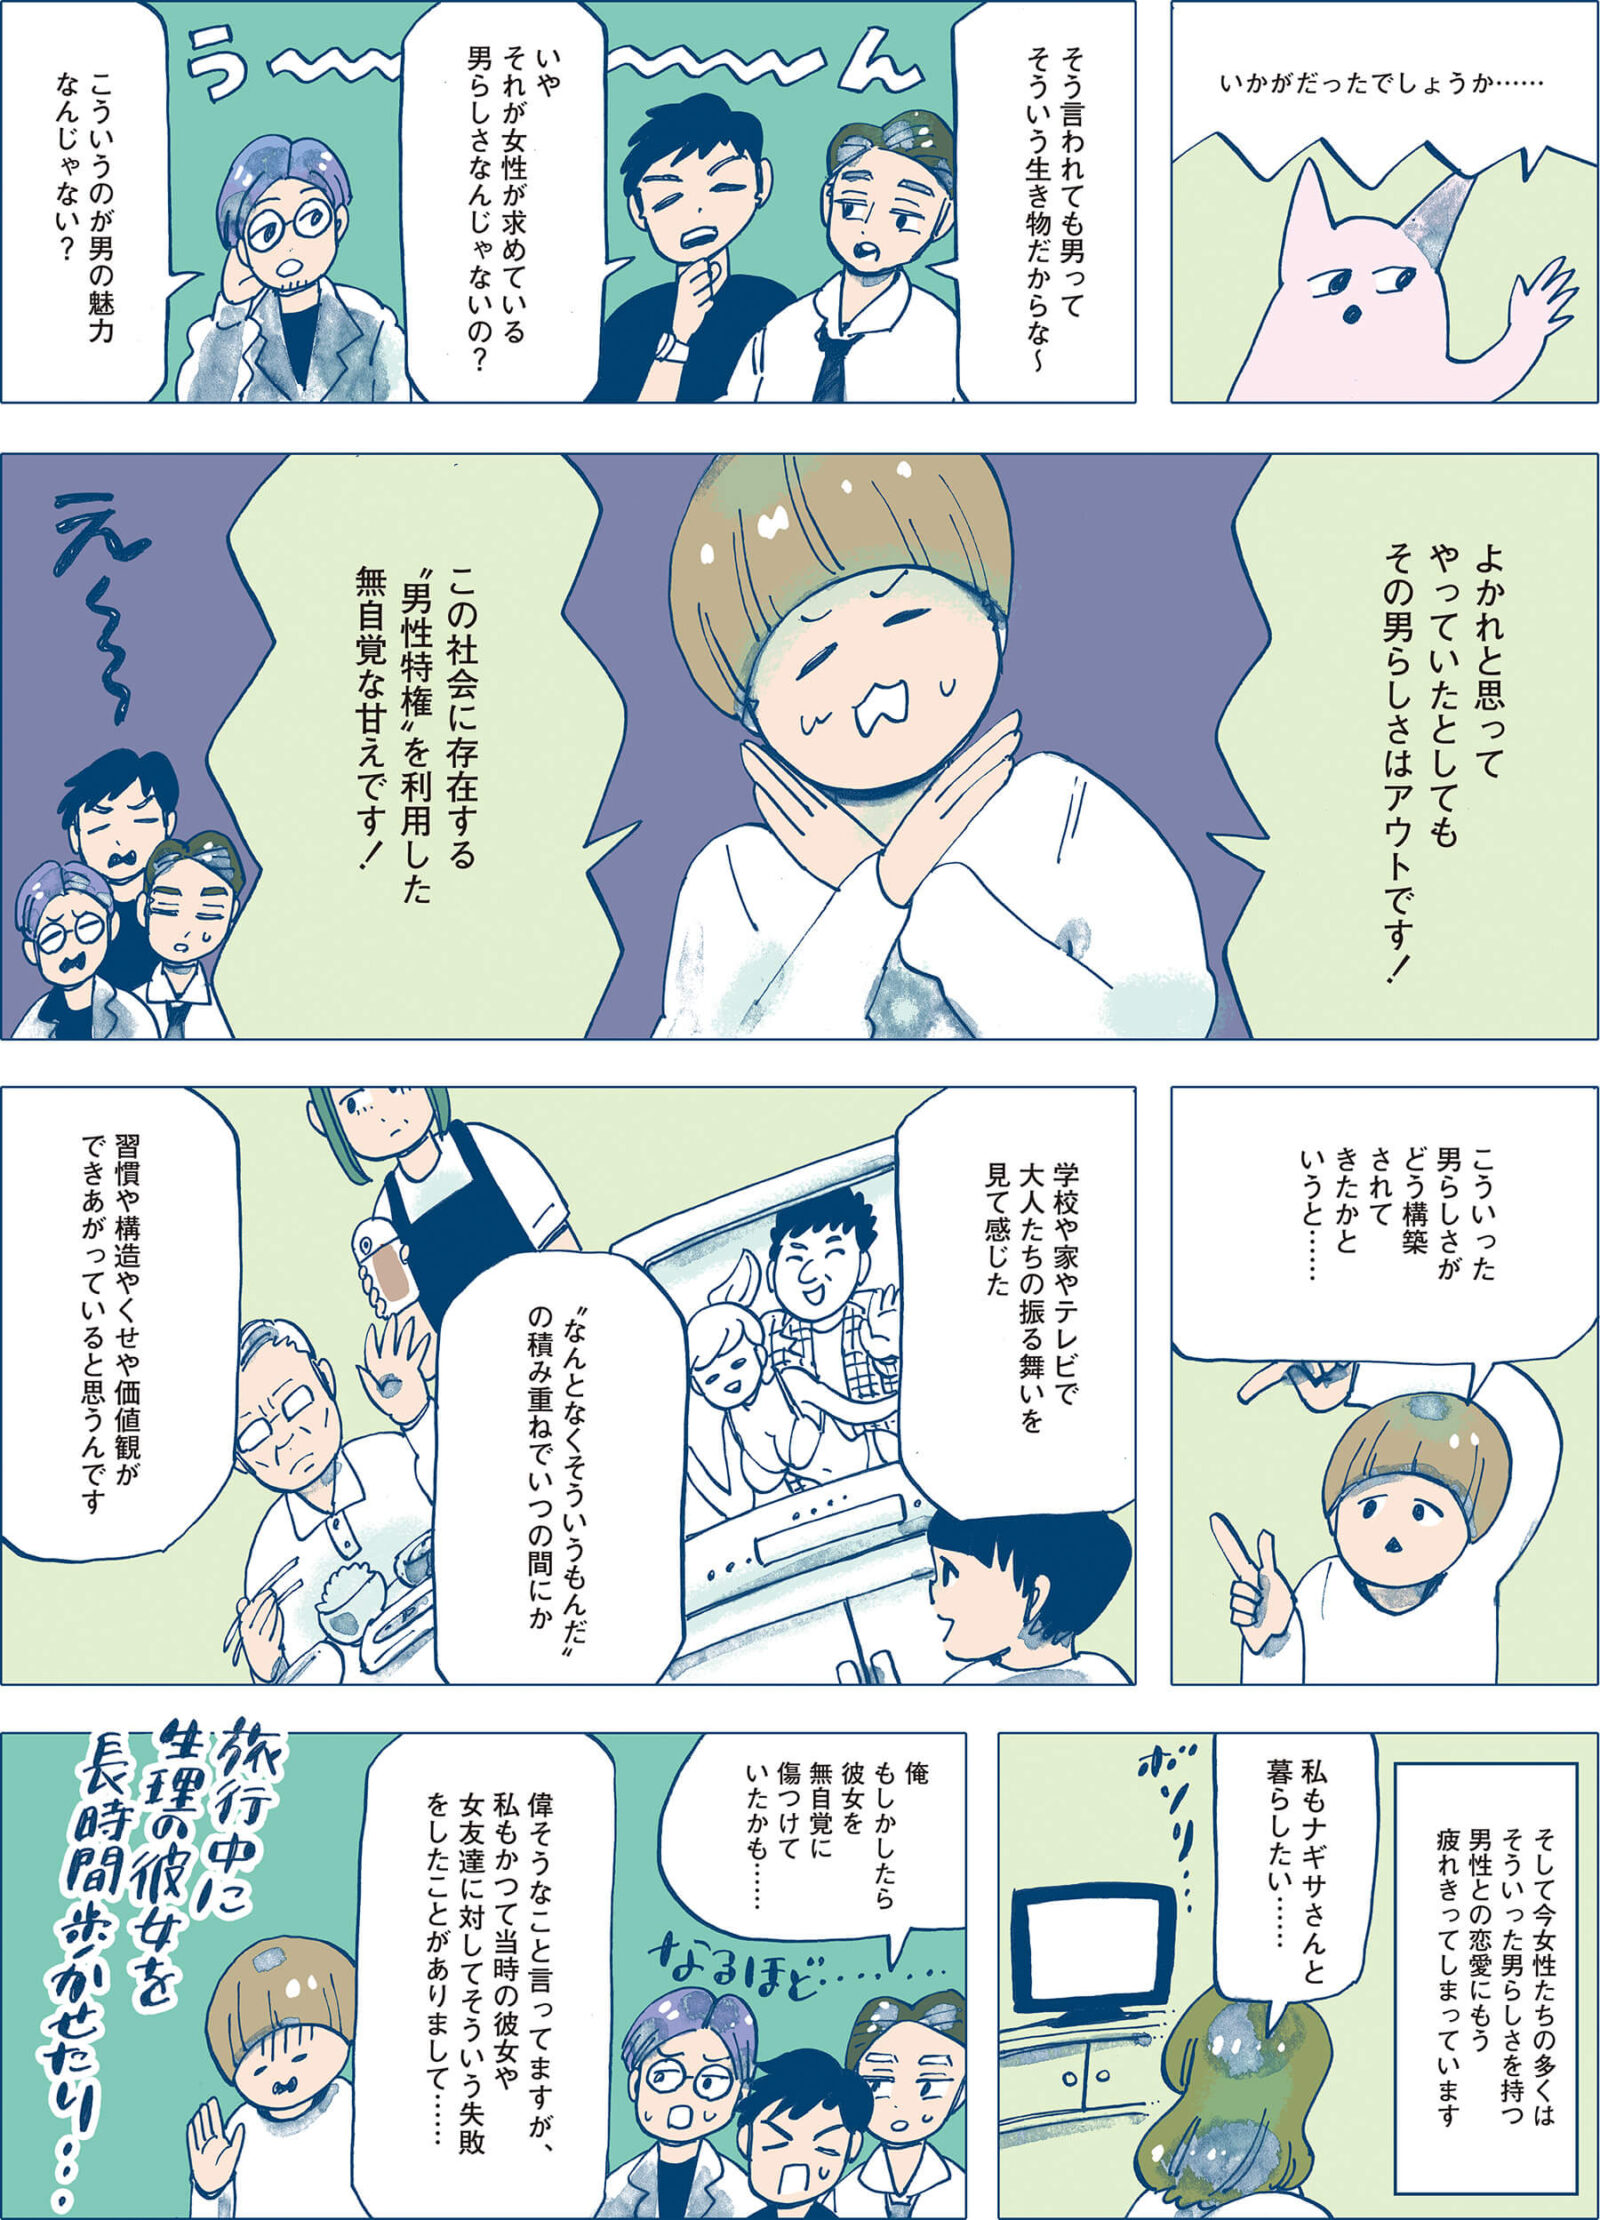 漫画家 谷口菜津子 「さよなら男らしさ」ストーリー3